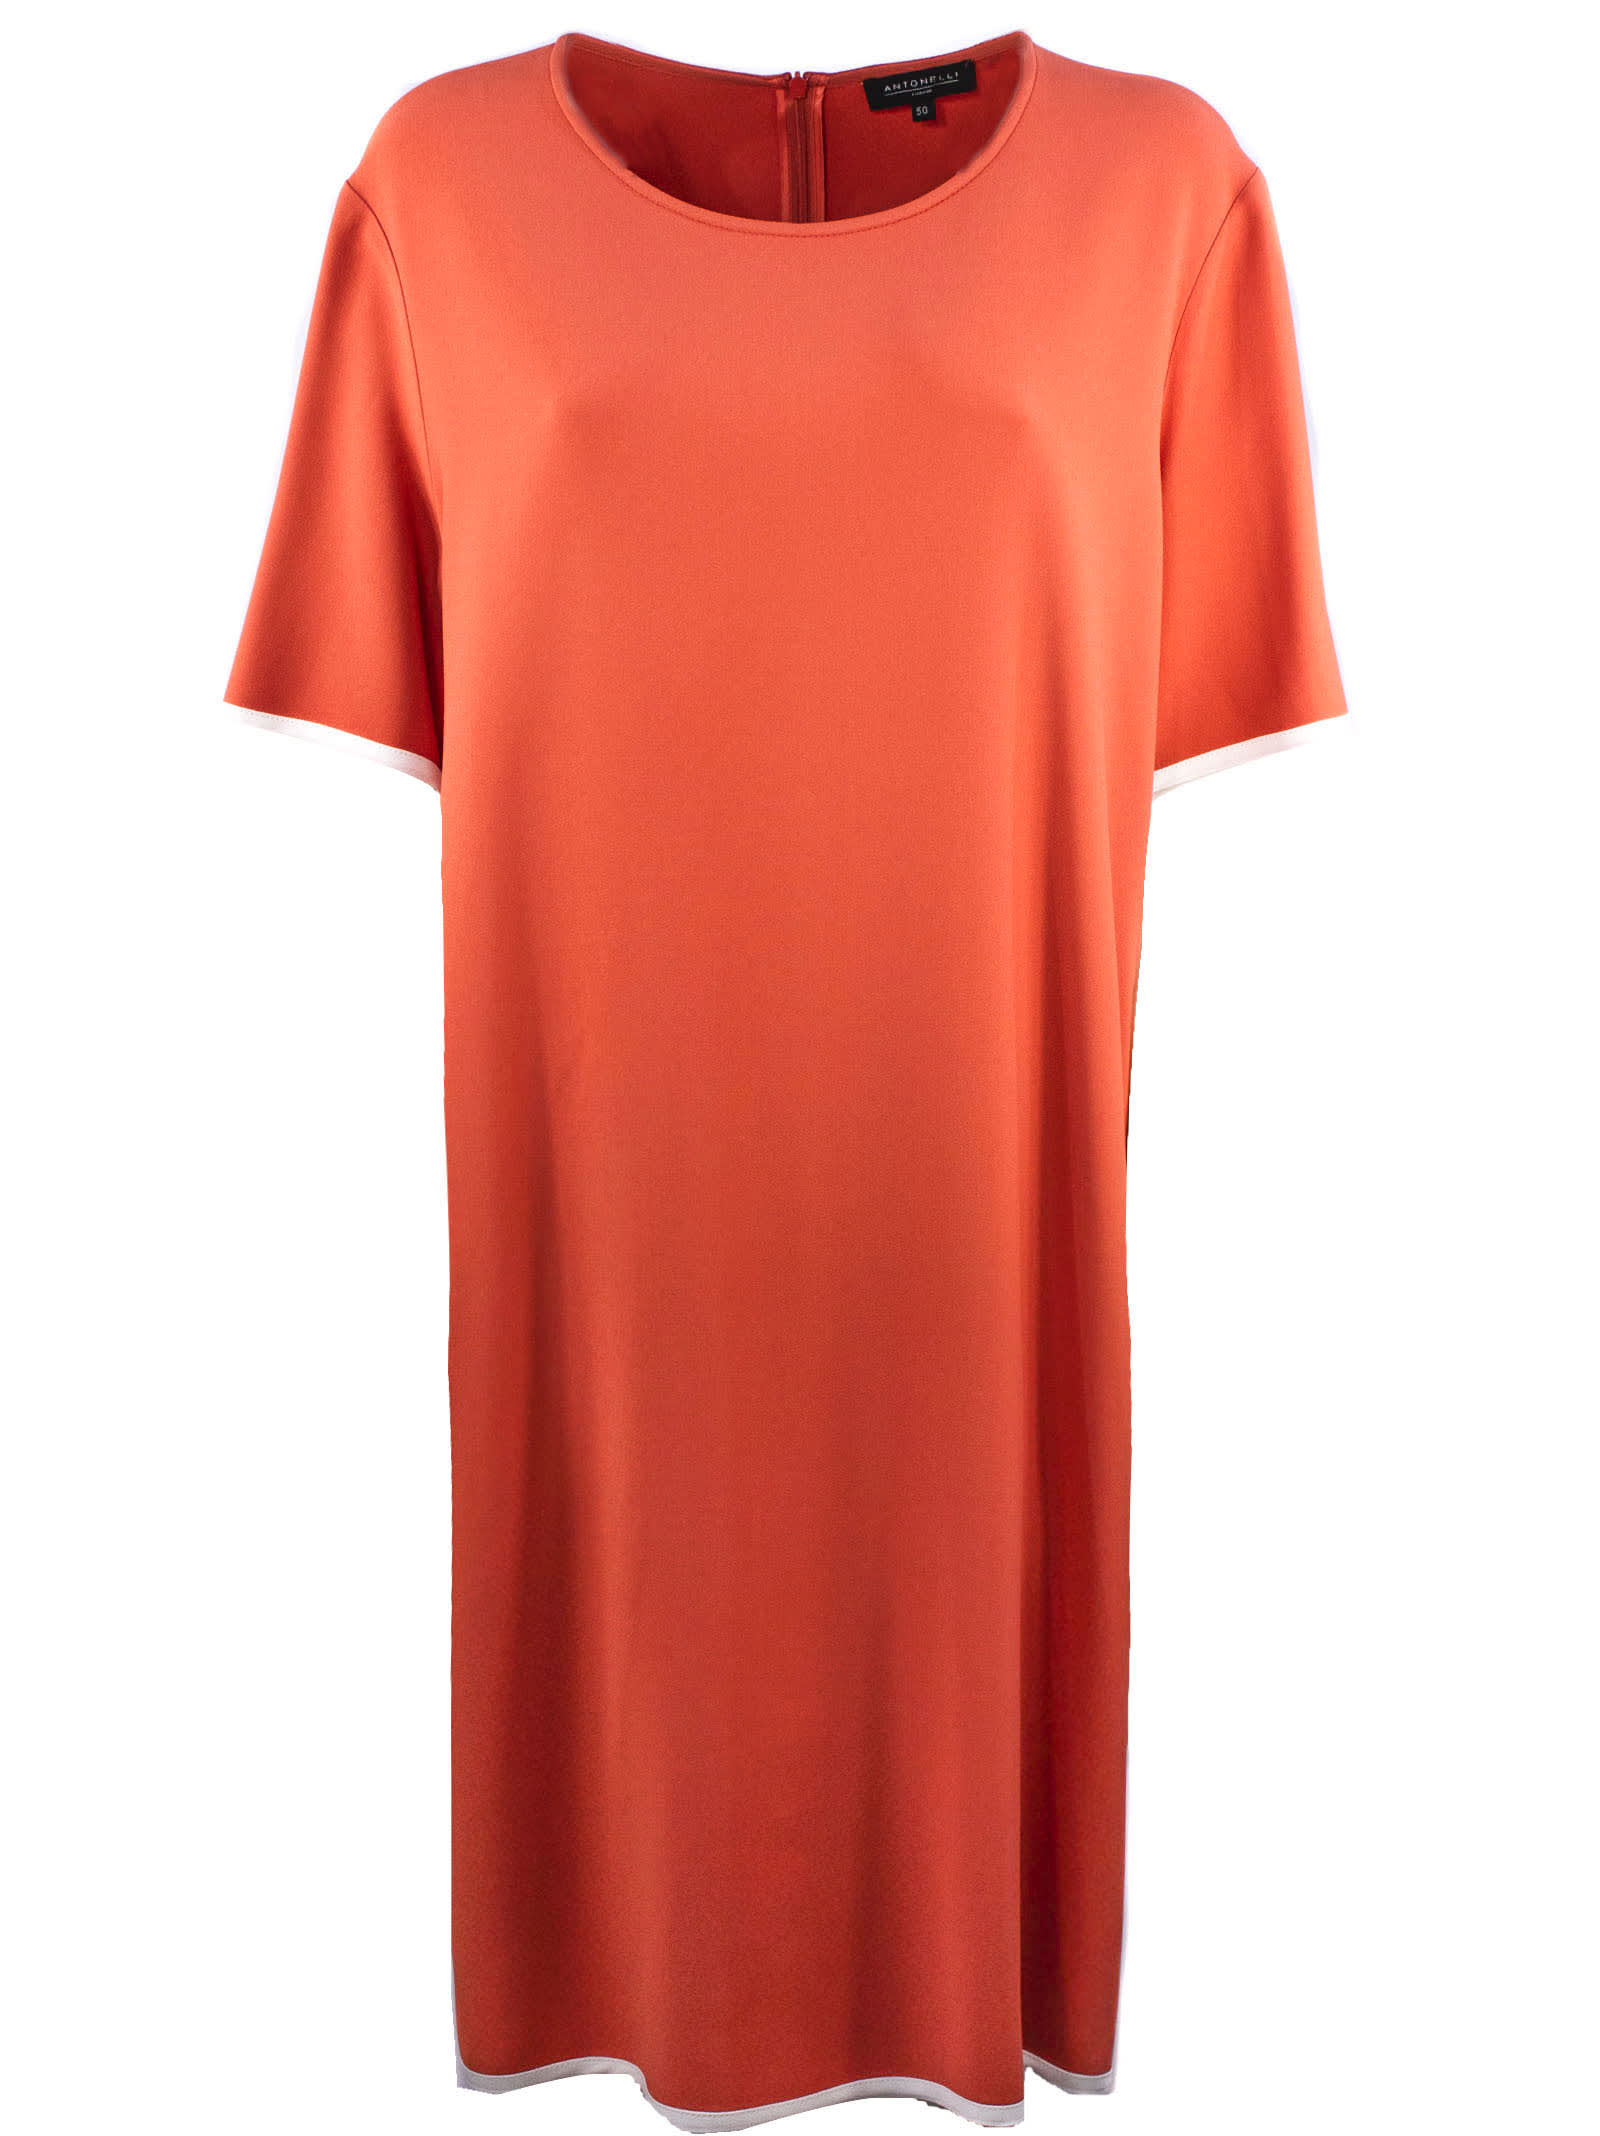 Antonelli Dress In Soft Orange-tone Fabric In Arancio